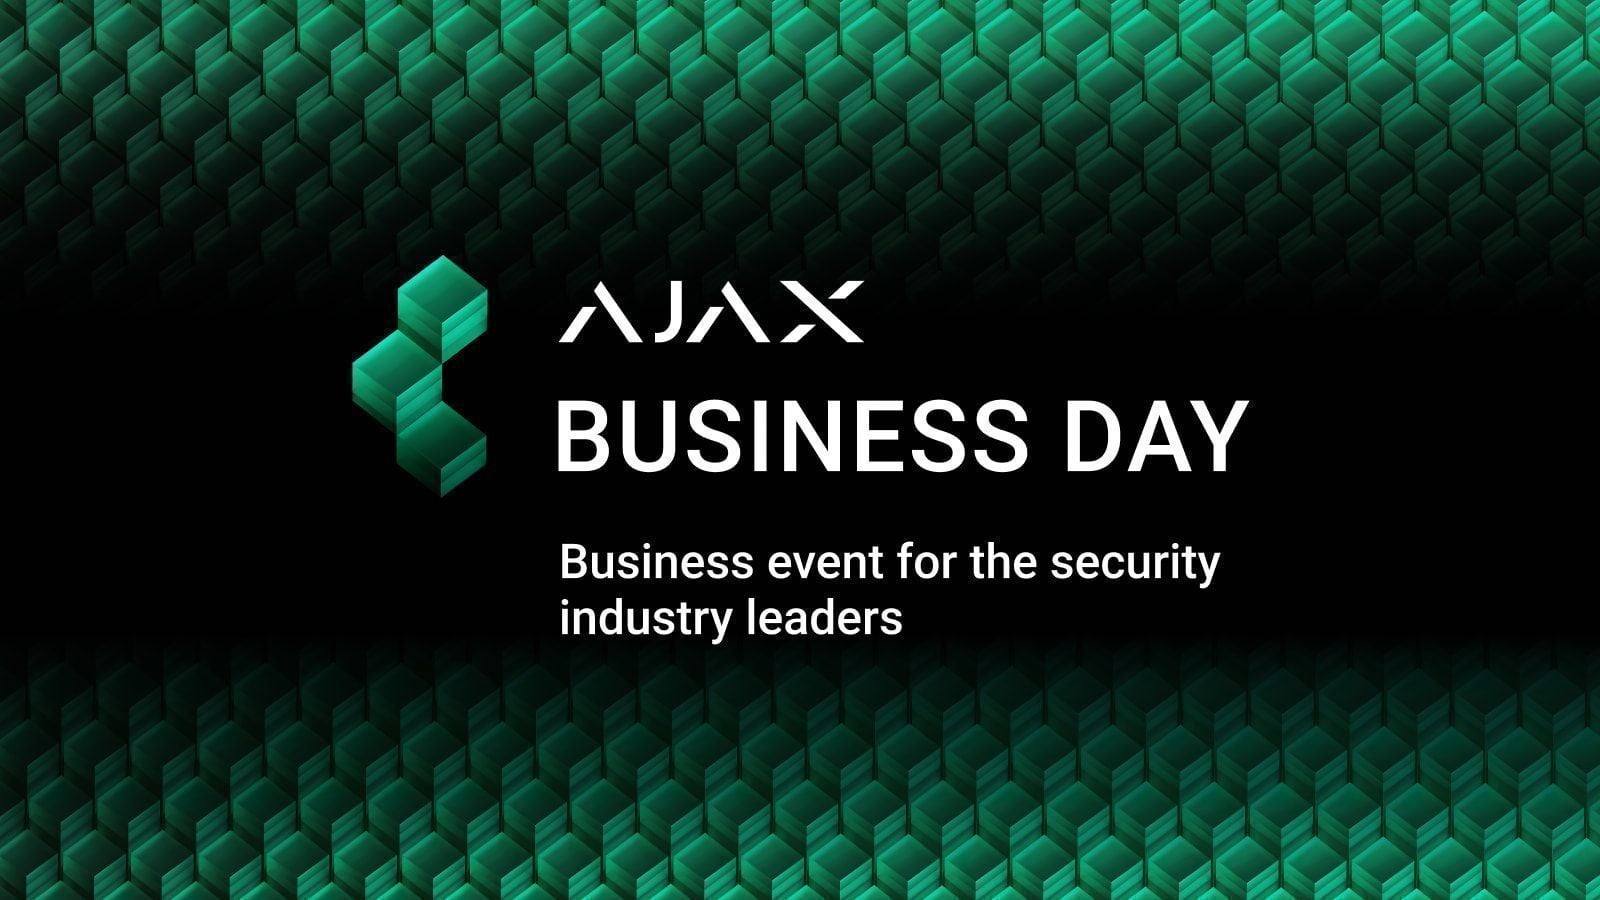 Ajax Systems ha celebrado una serie de eventos Ajax Business Day en DACH, Italia y Francia